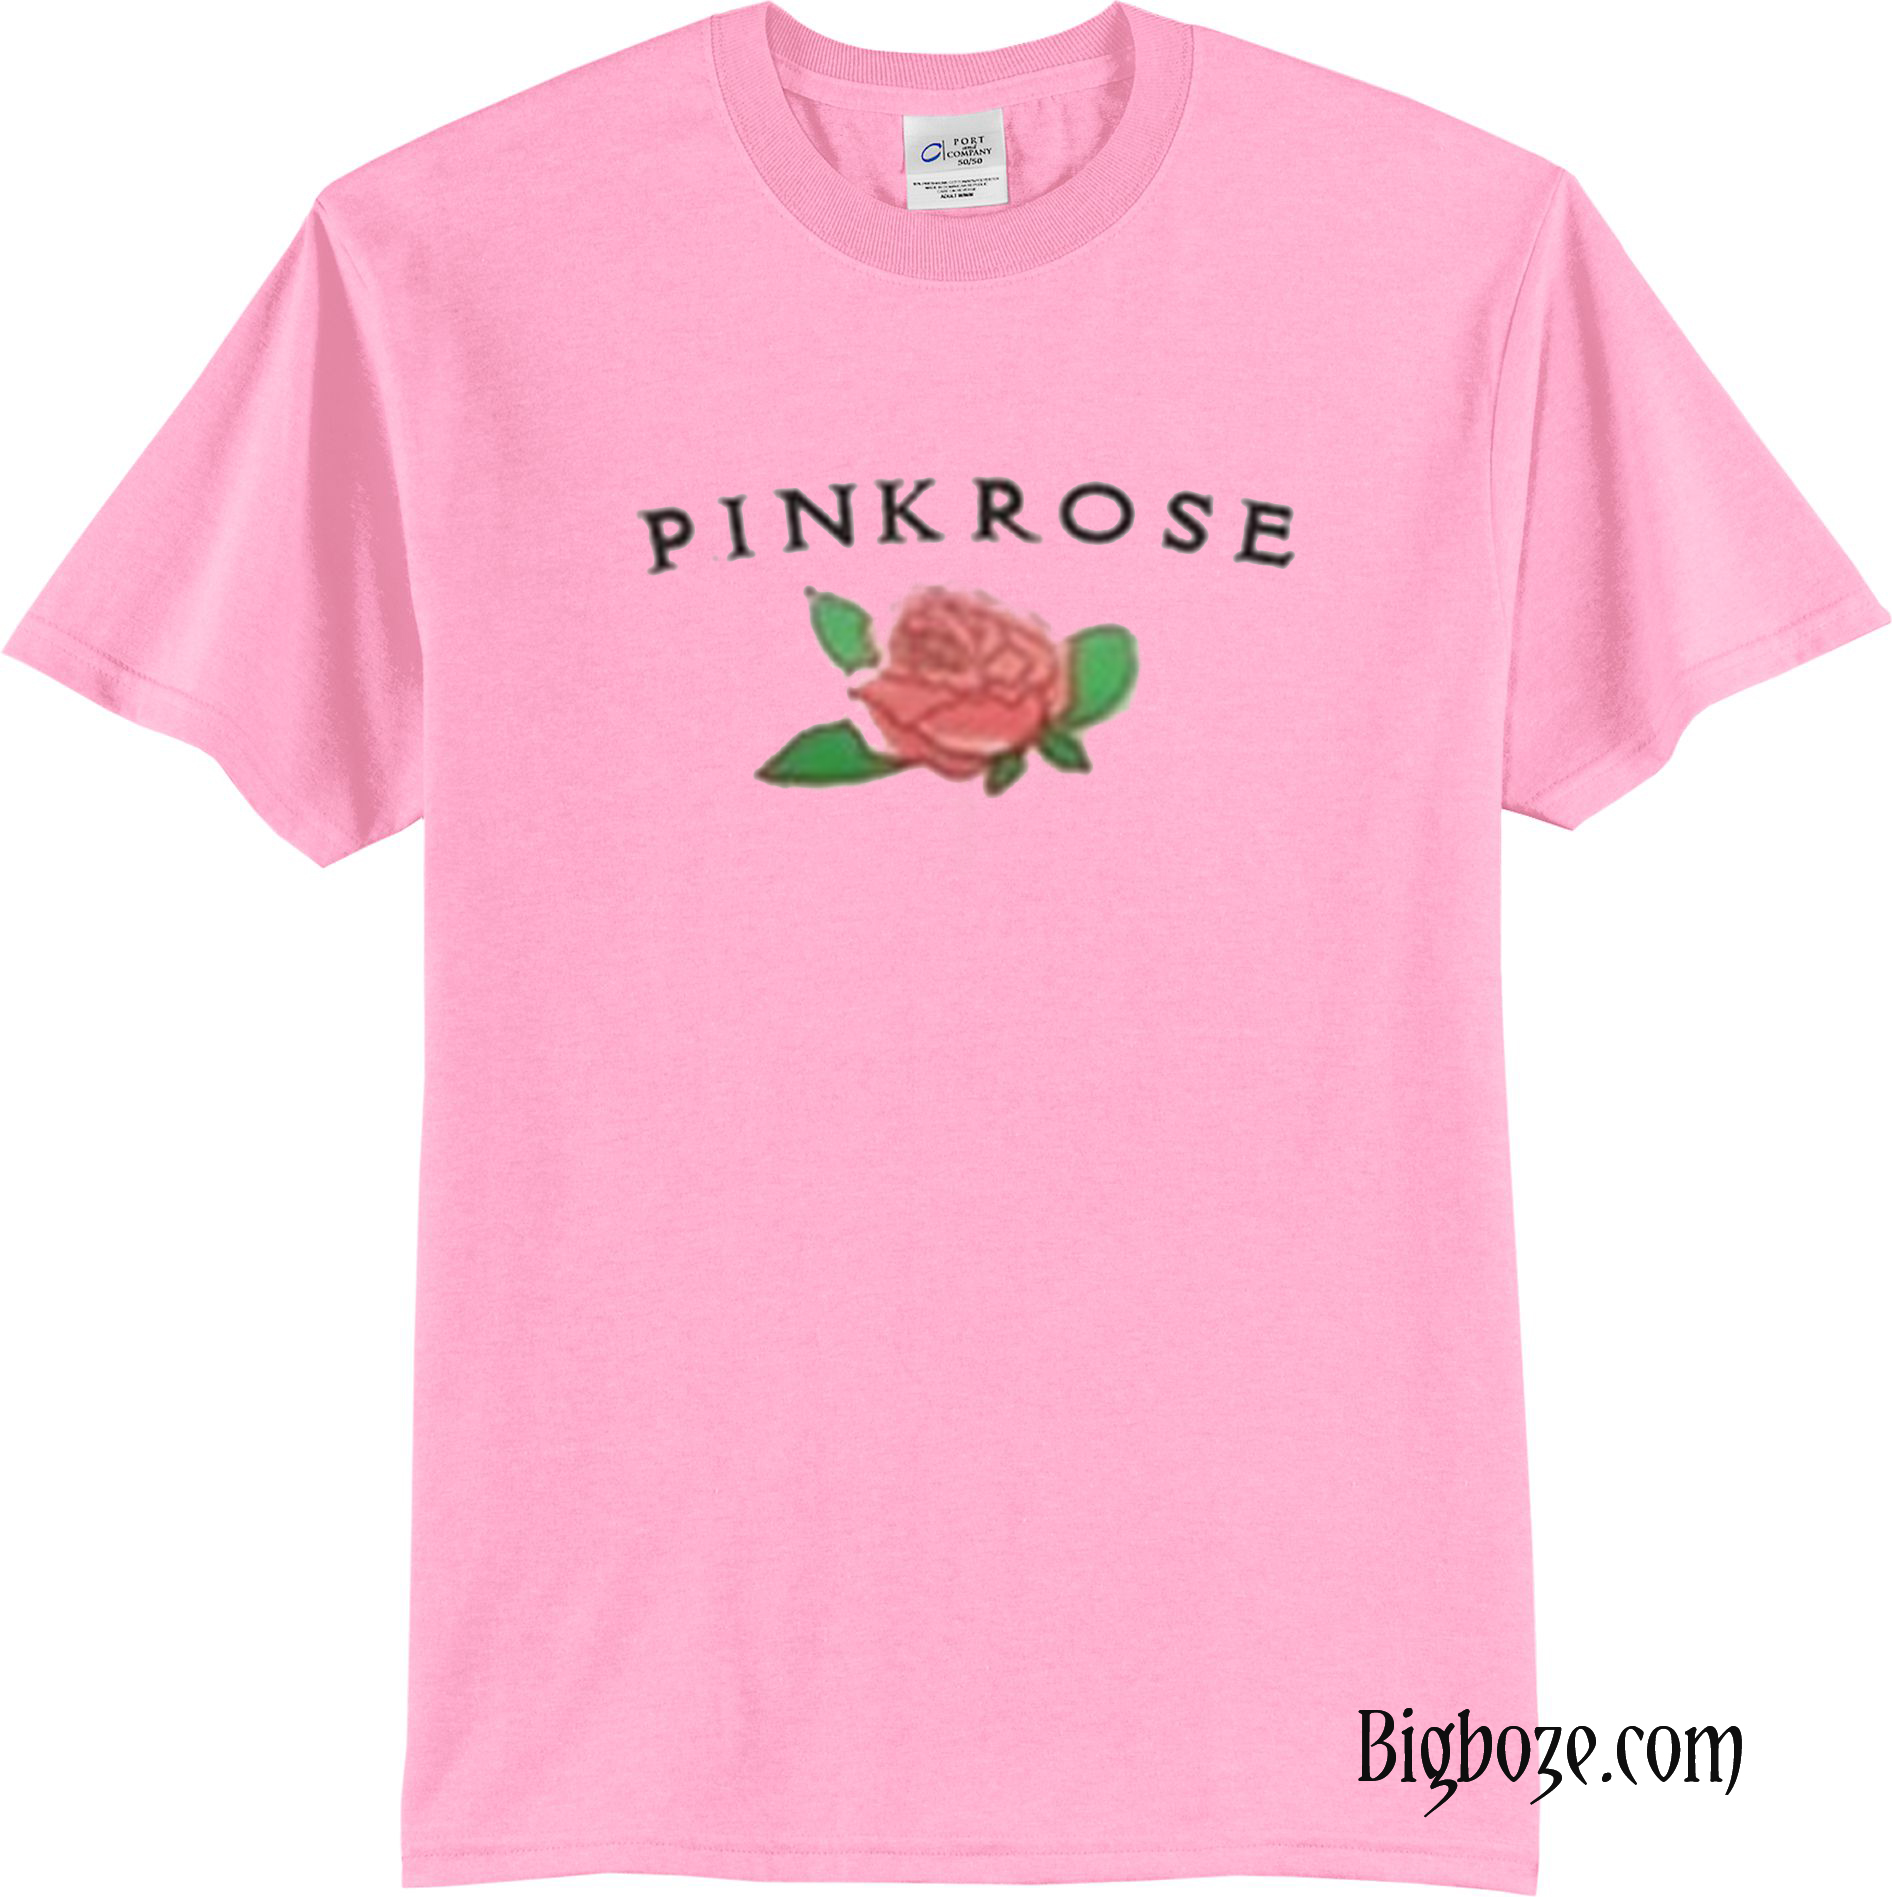 Pink Rose T Shirt